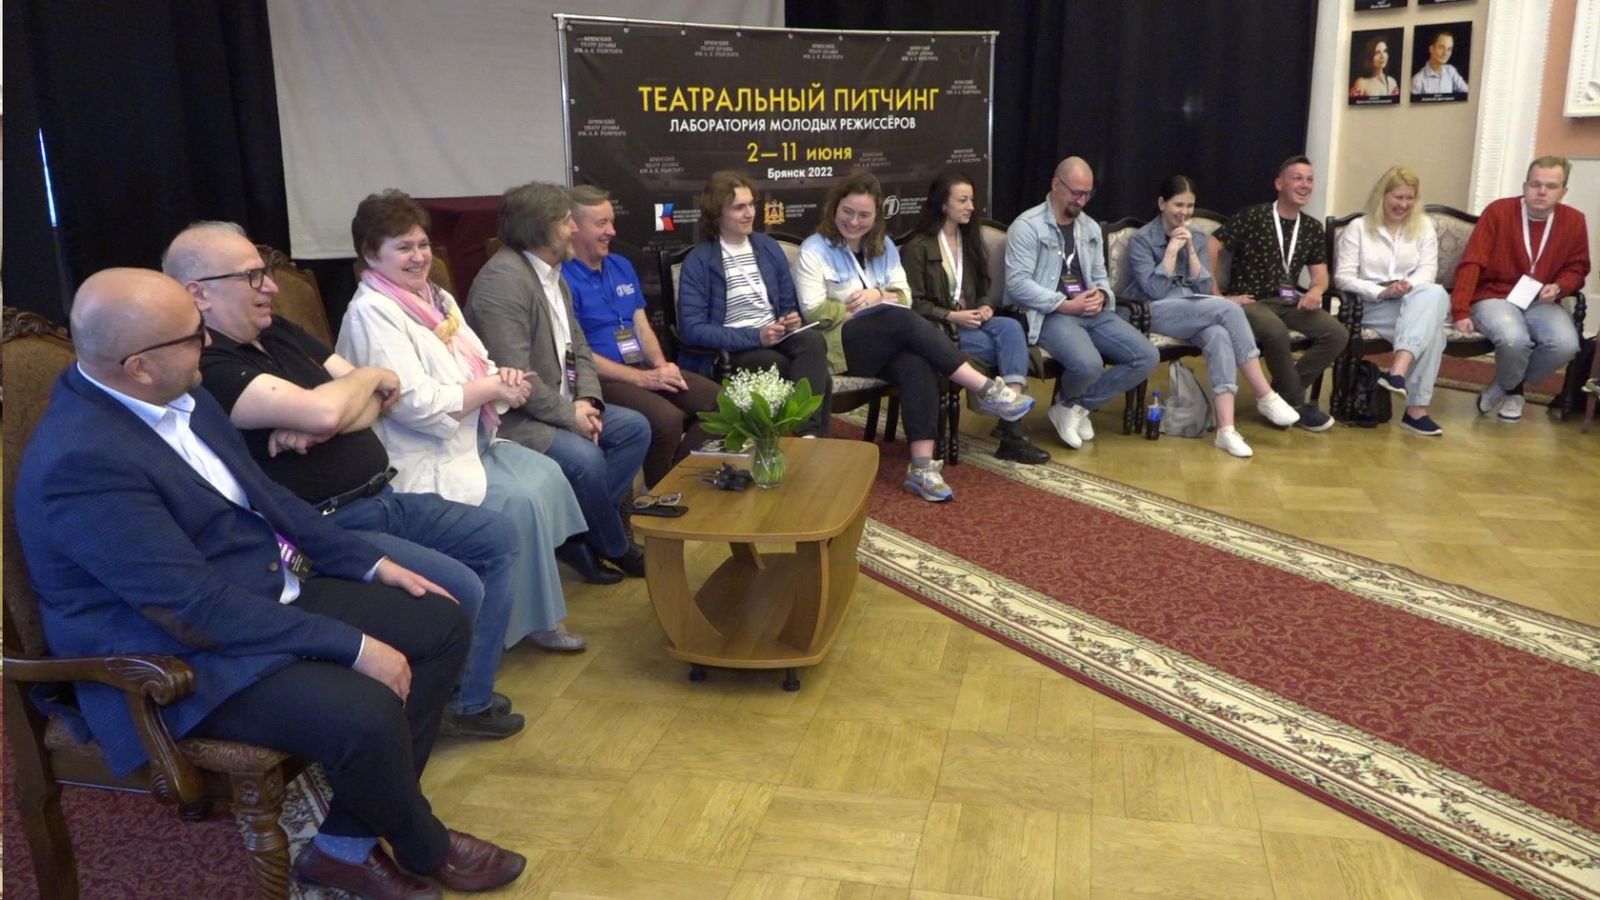 В Брянске состоялась пресс-конференция проекта «Театральный питчинг»